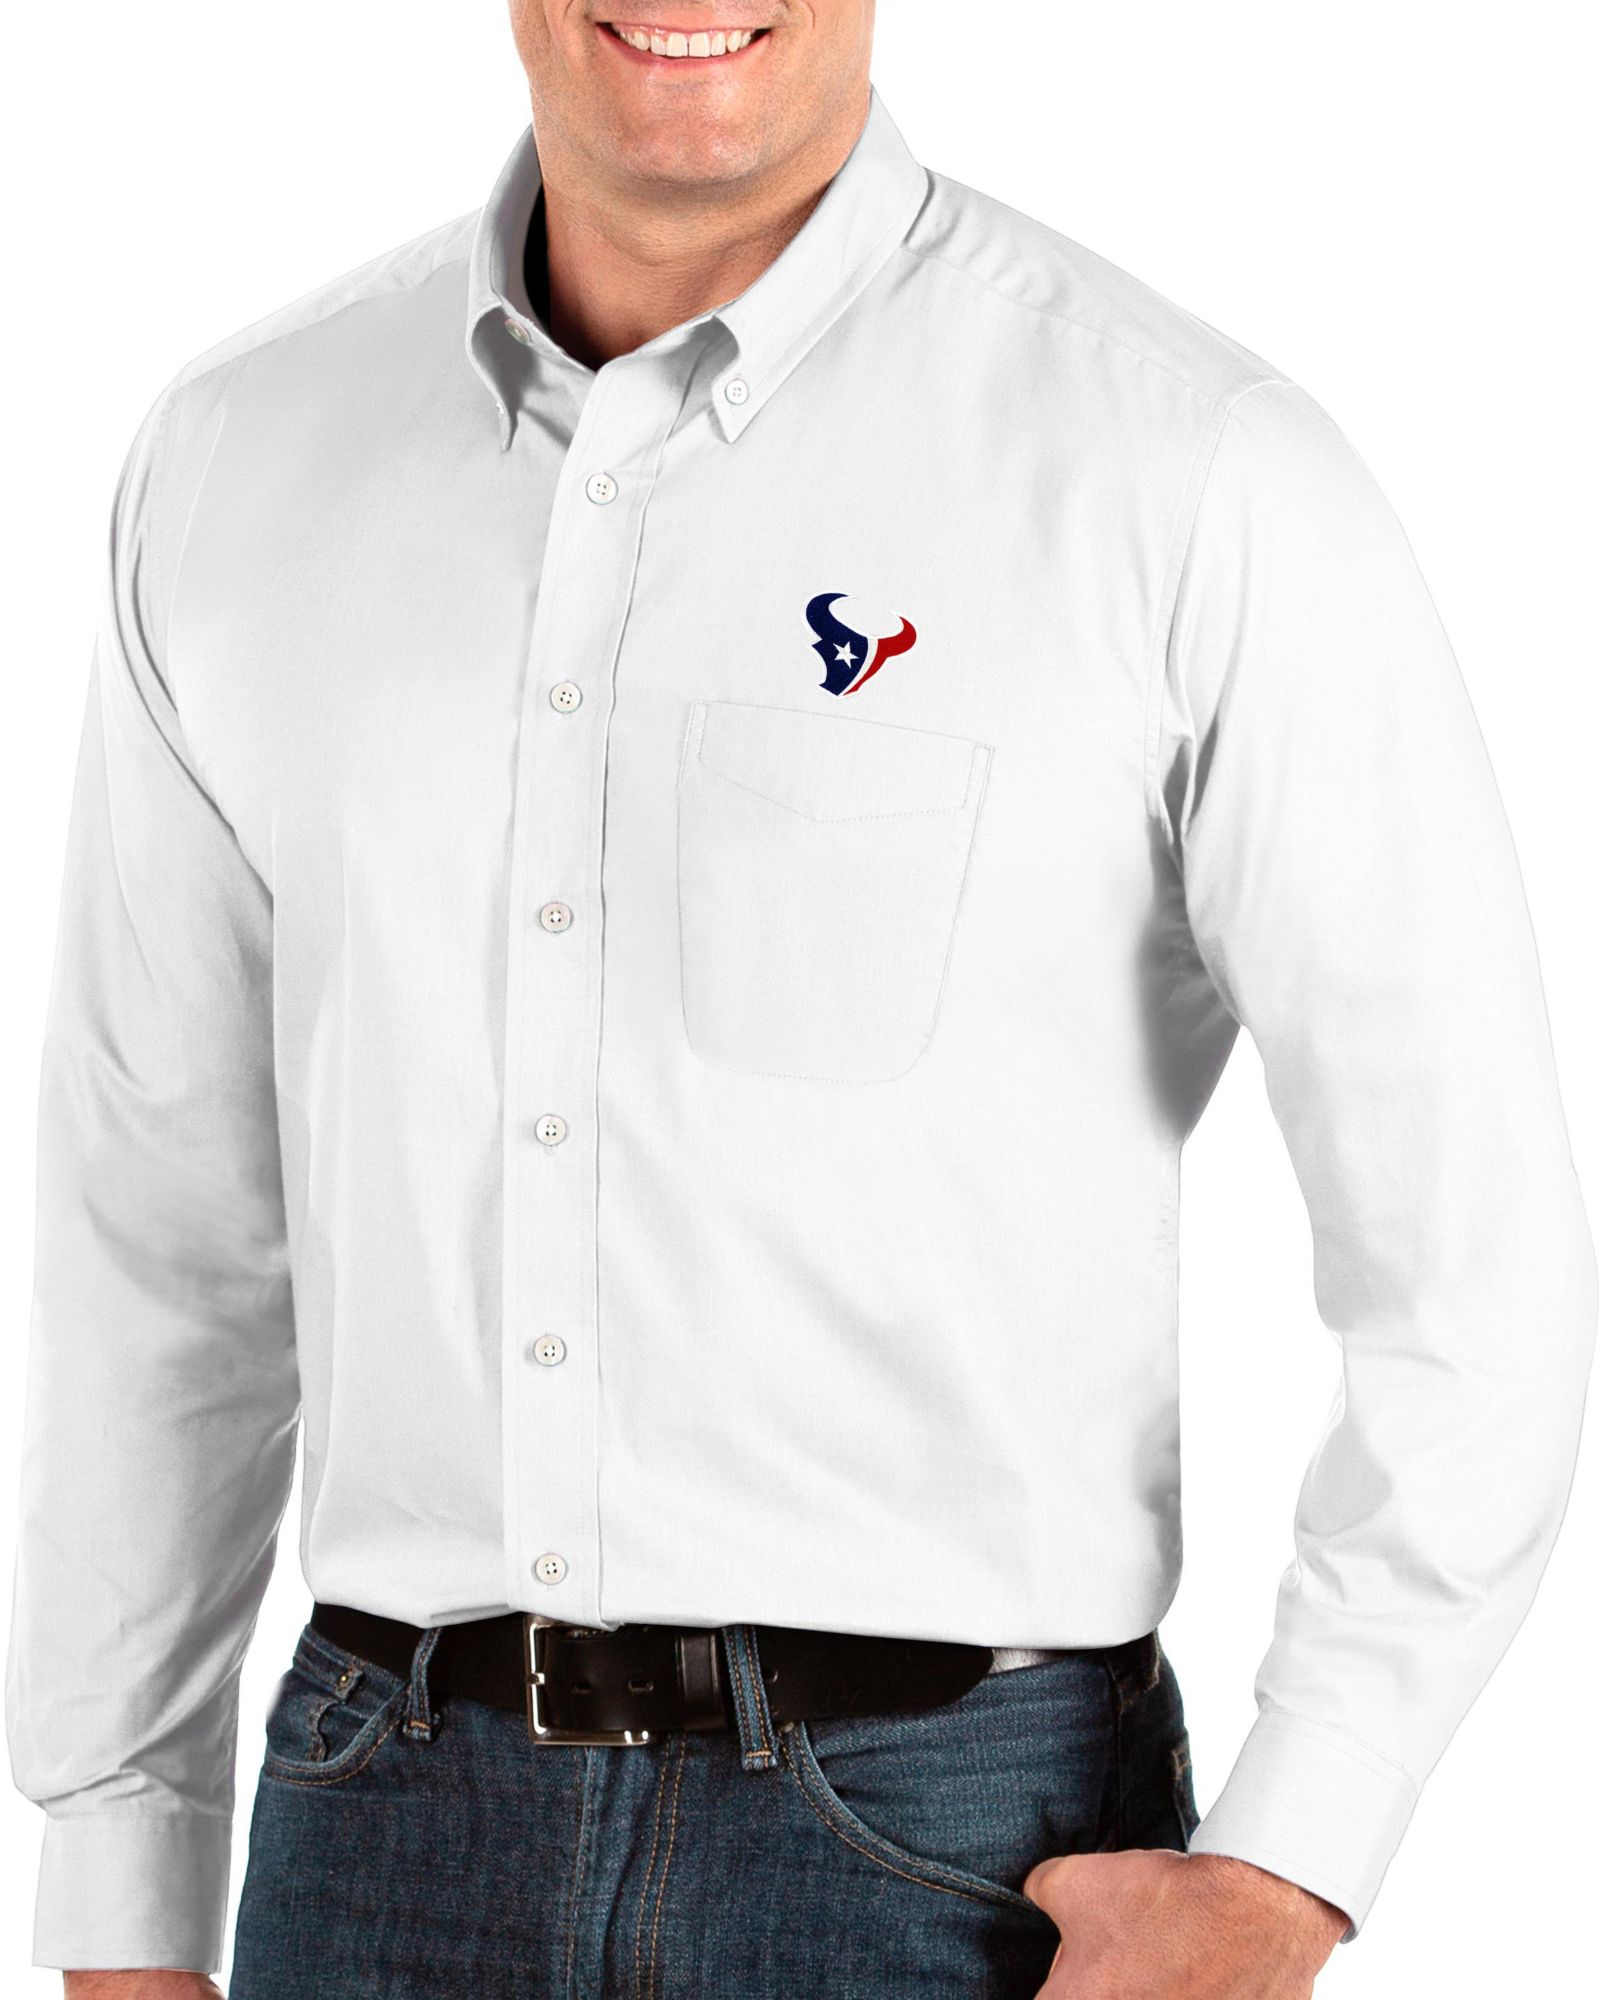 texans dress shirt